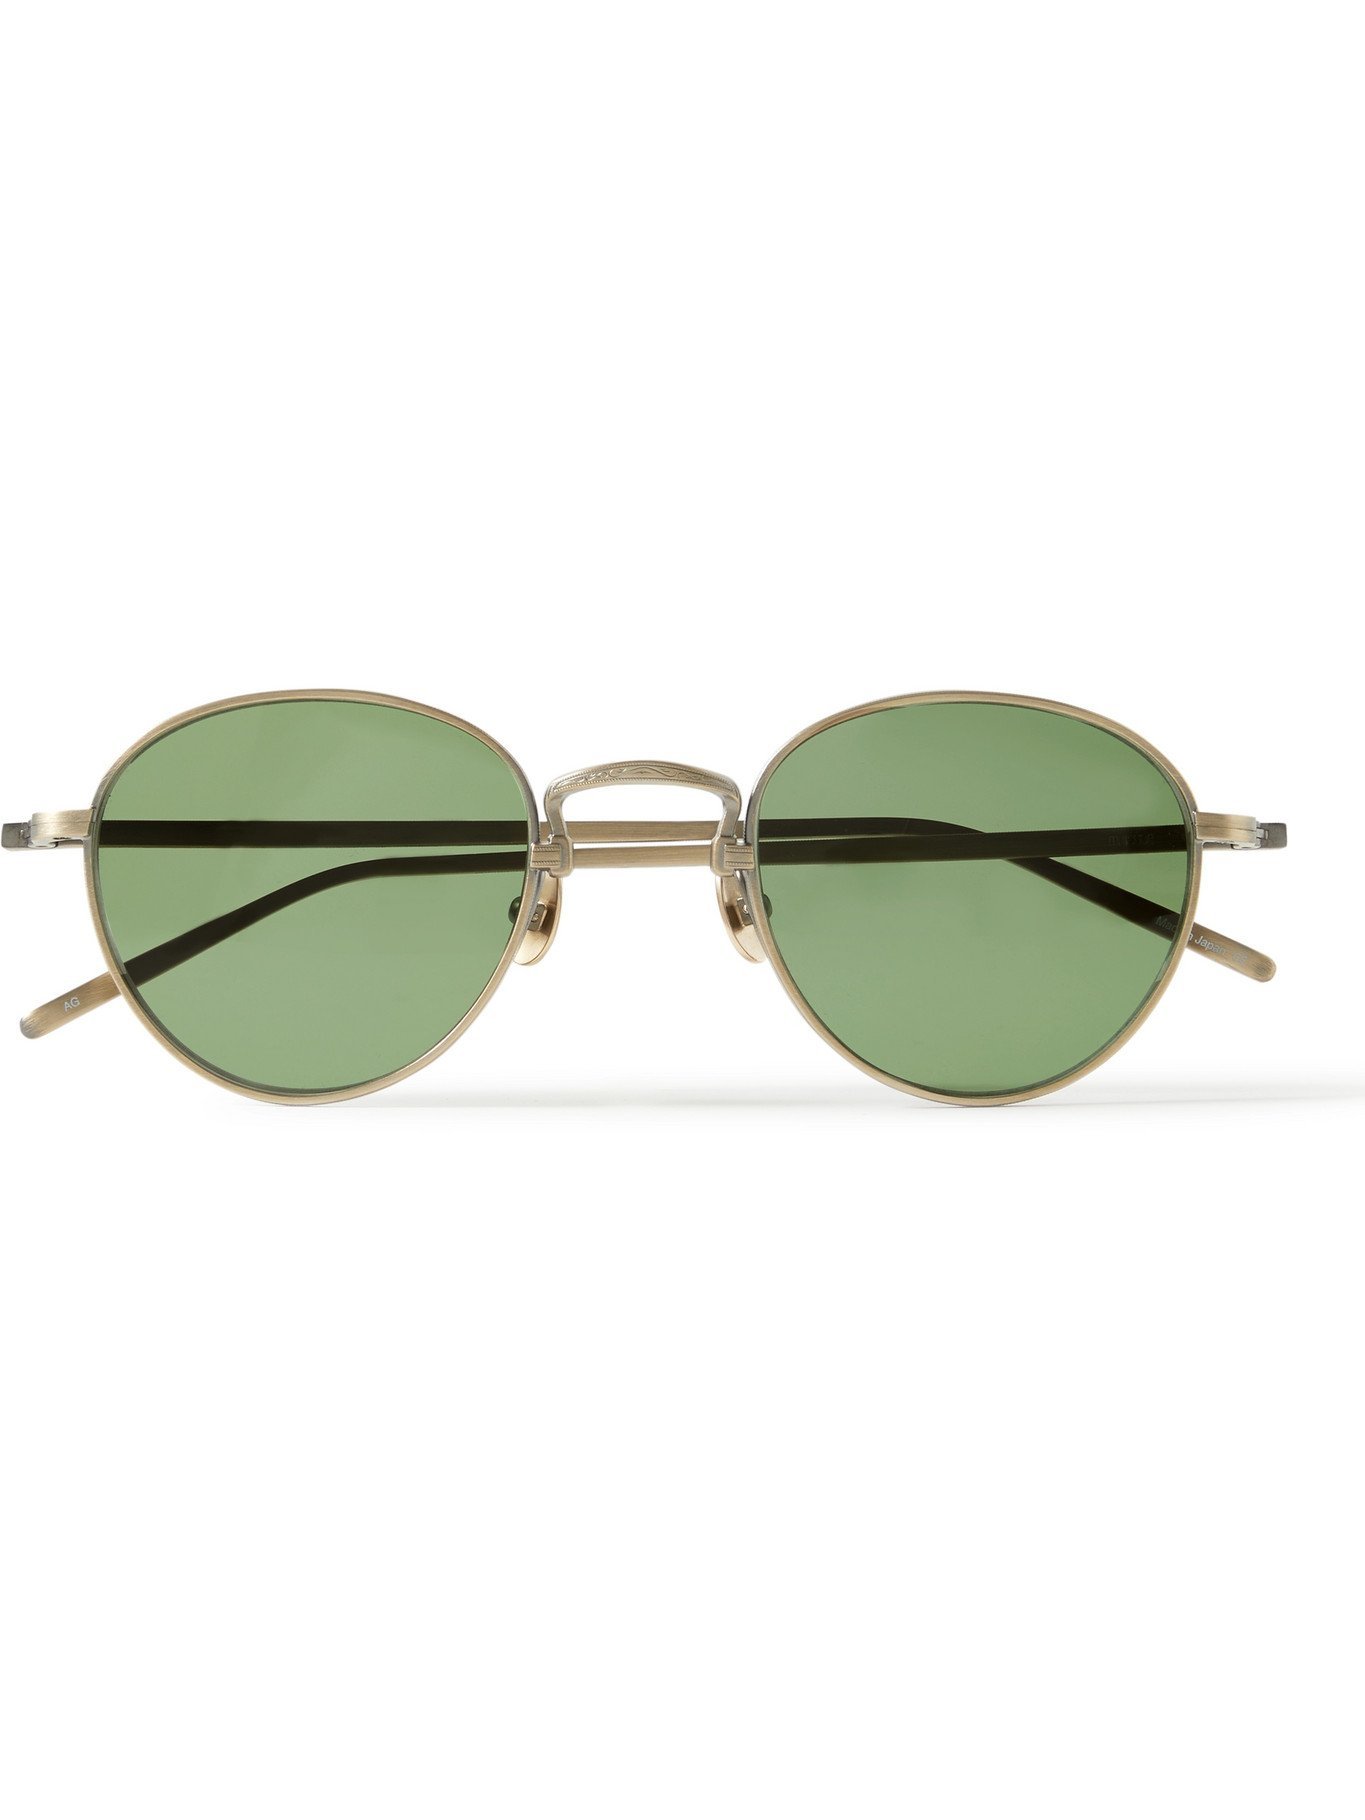 MATSUDA - Round-Frame Gold-Tone Titanium Sunglasses Matsuda